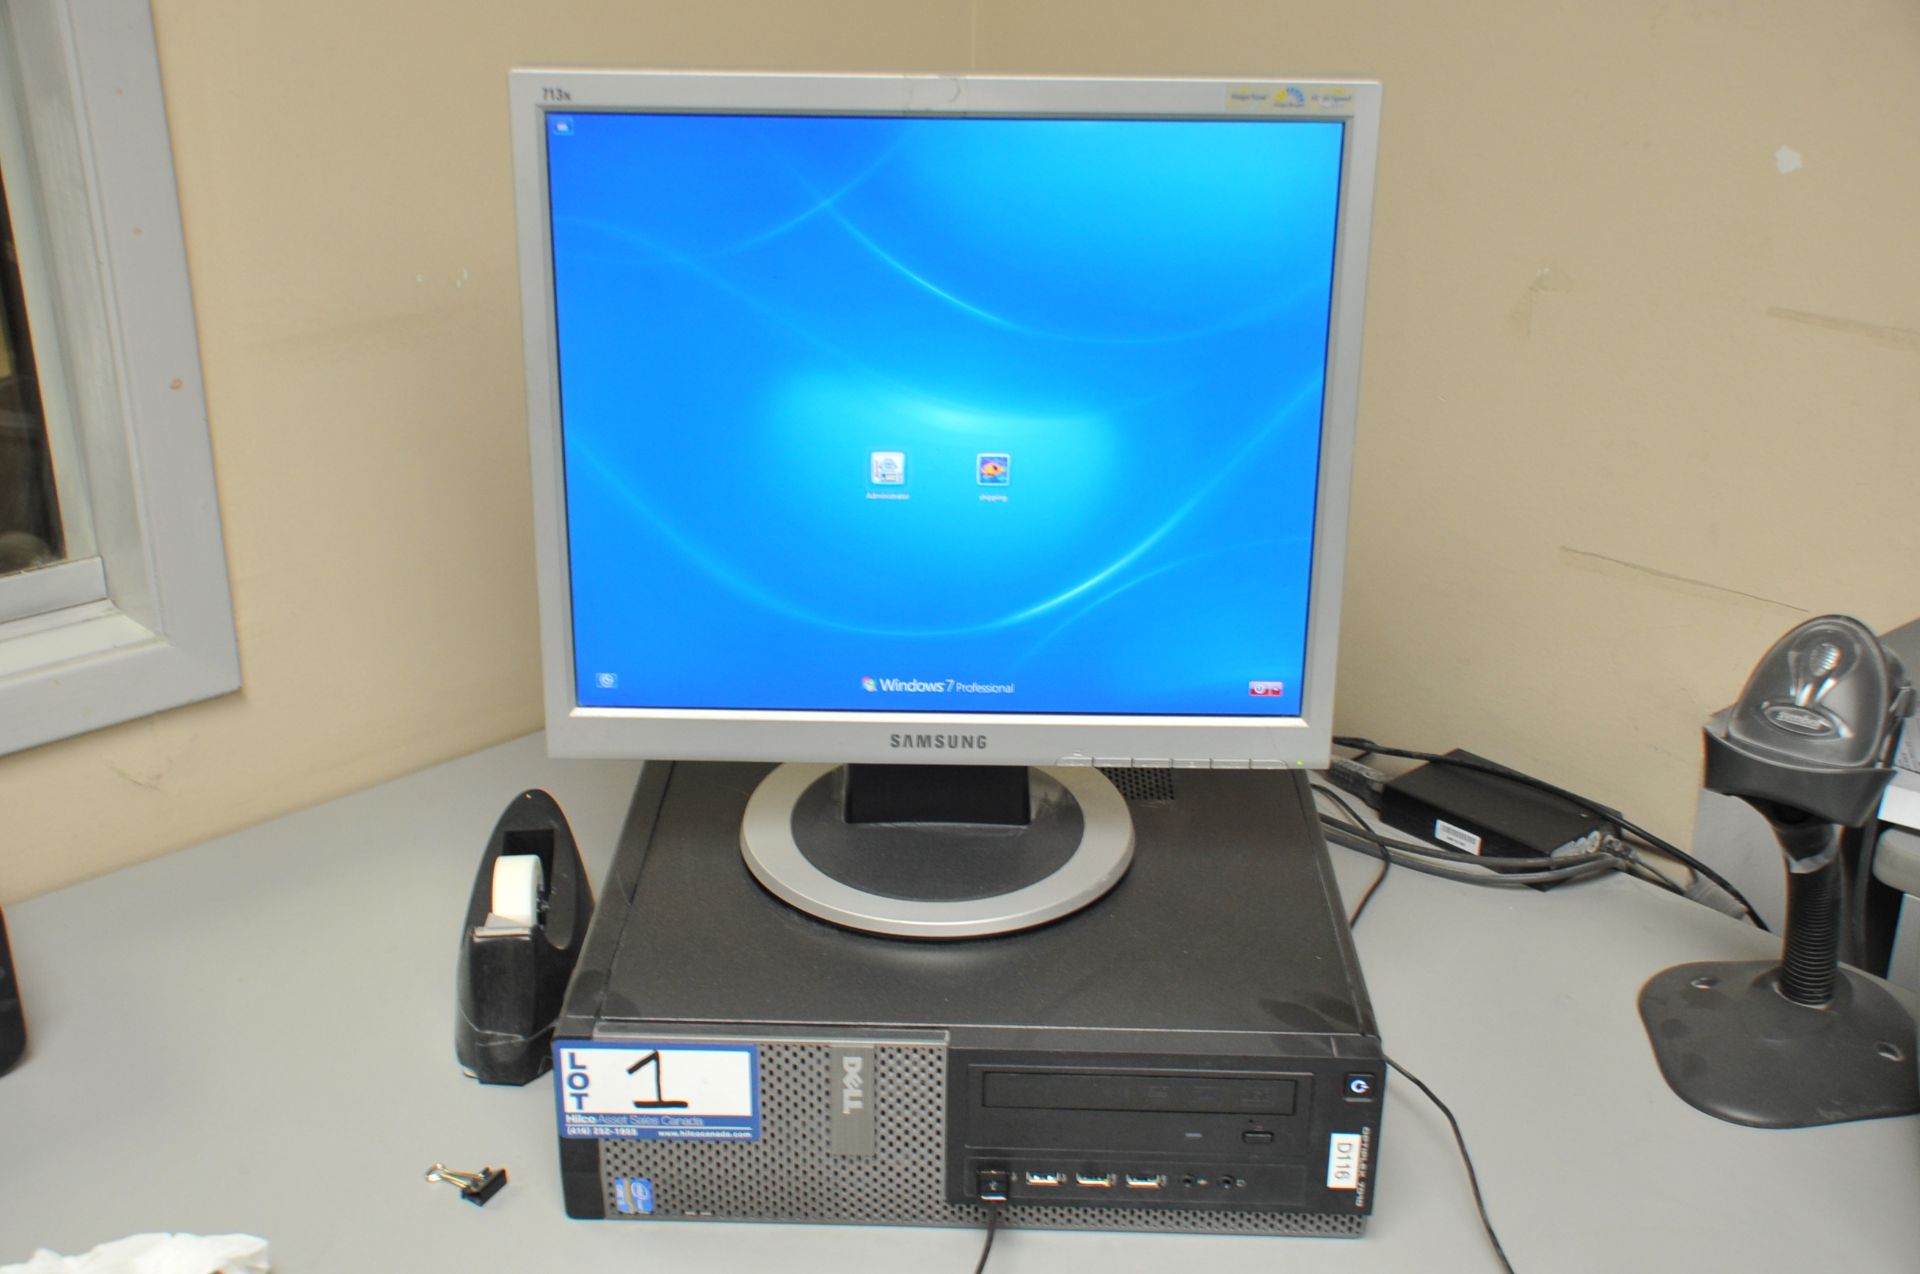 Dell Model Optiplex 7010 Core I5 Computer; with Samsung 13" Monitor